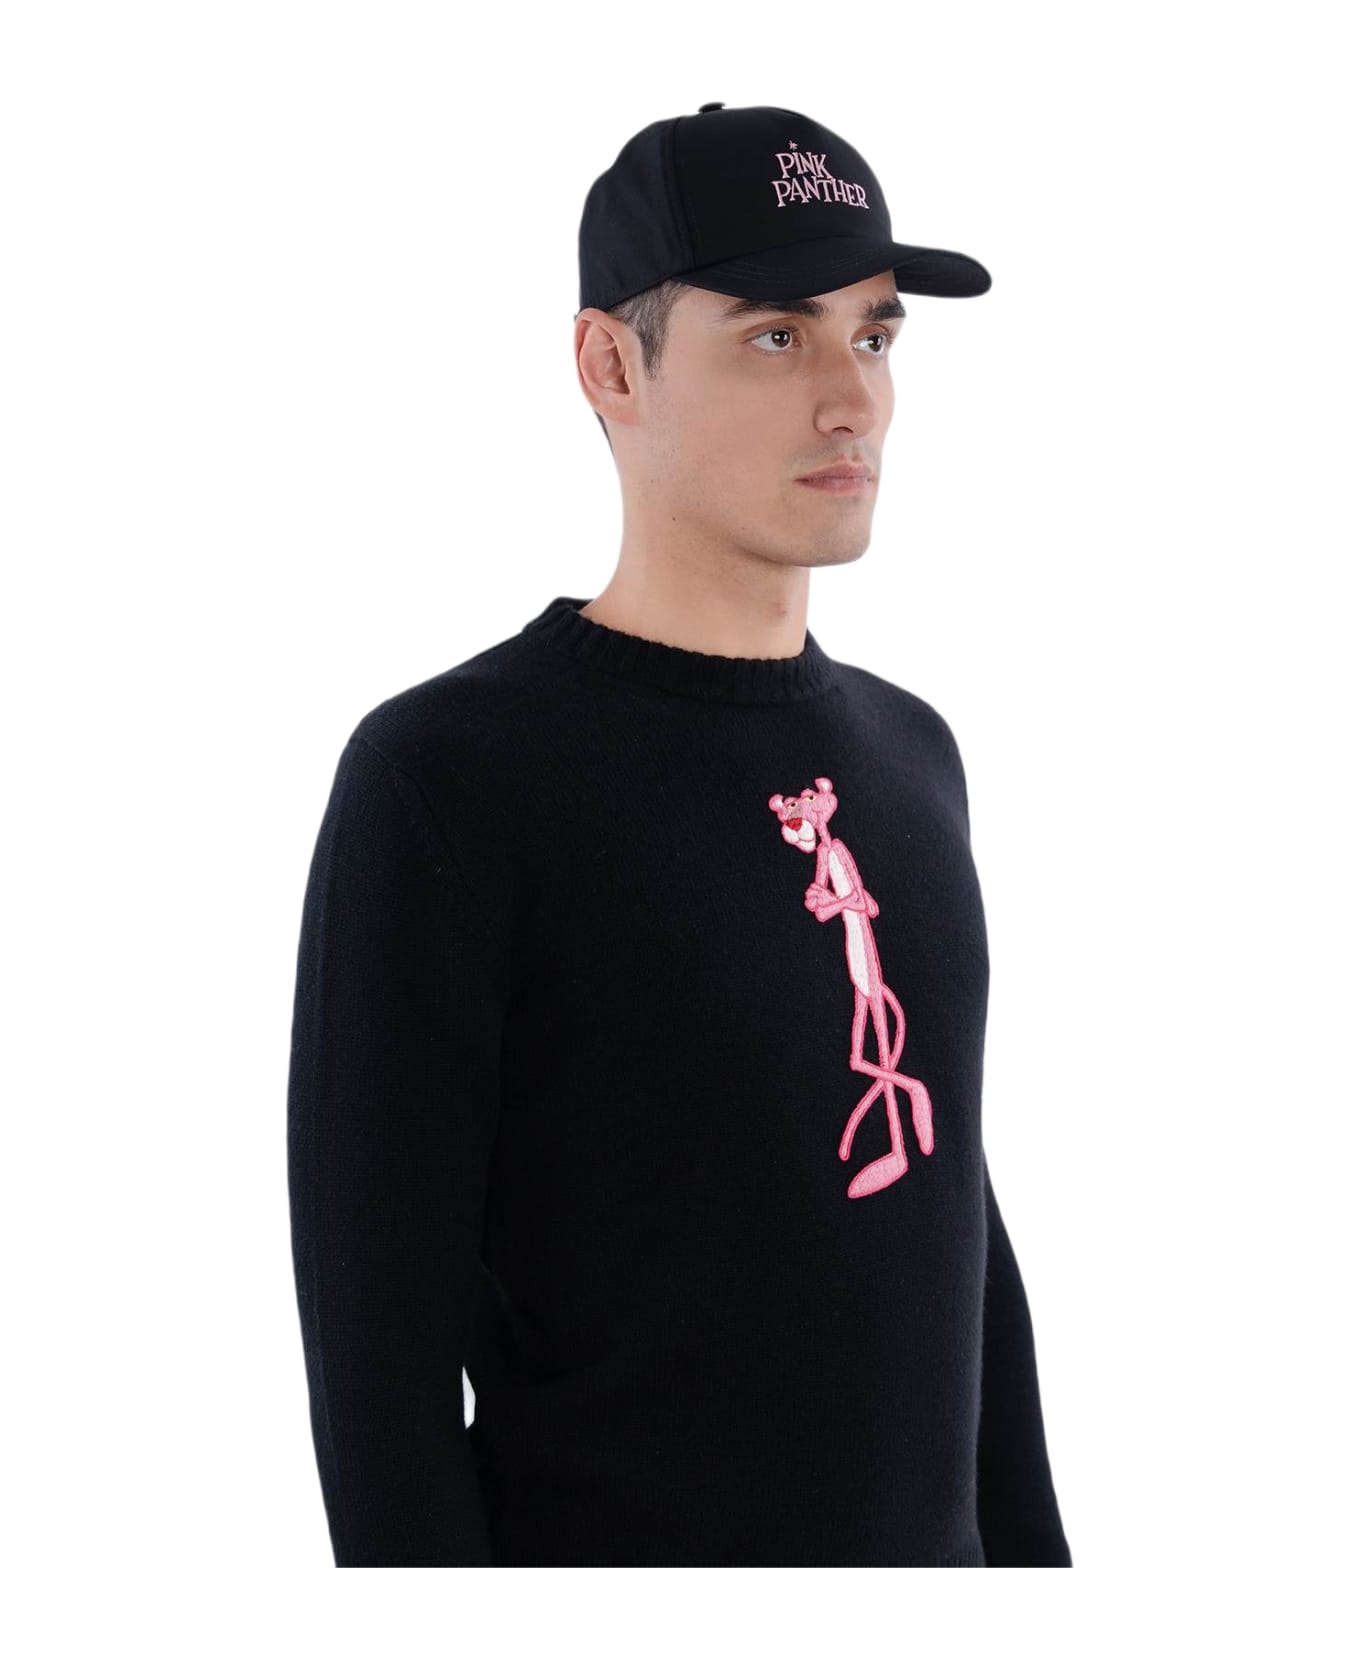 Larusmiani Baseball Cap 'pink Panther' Hat - Black